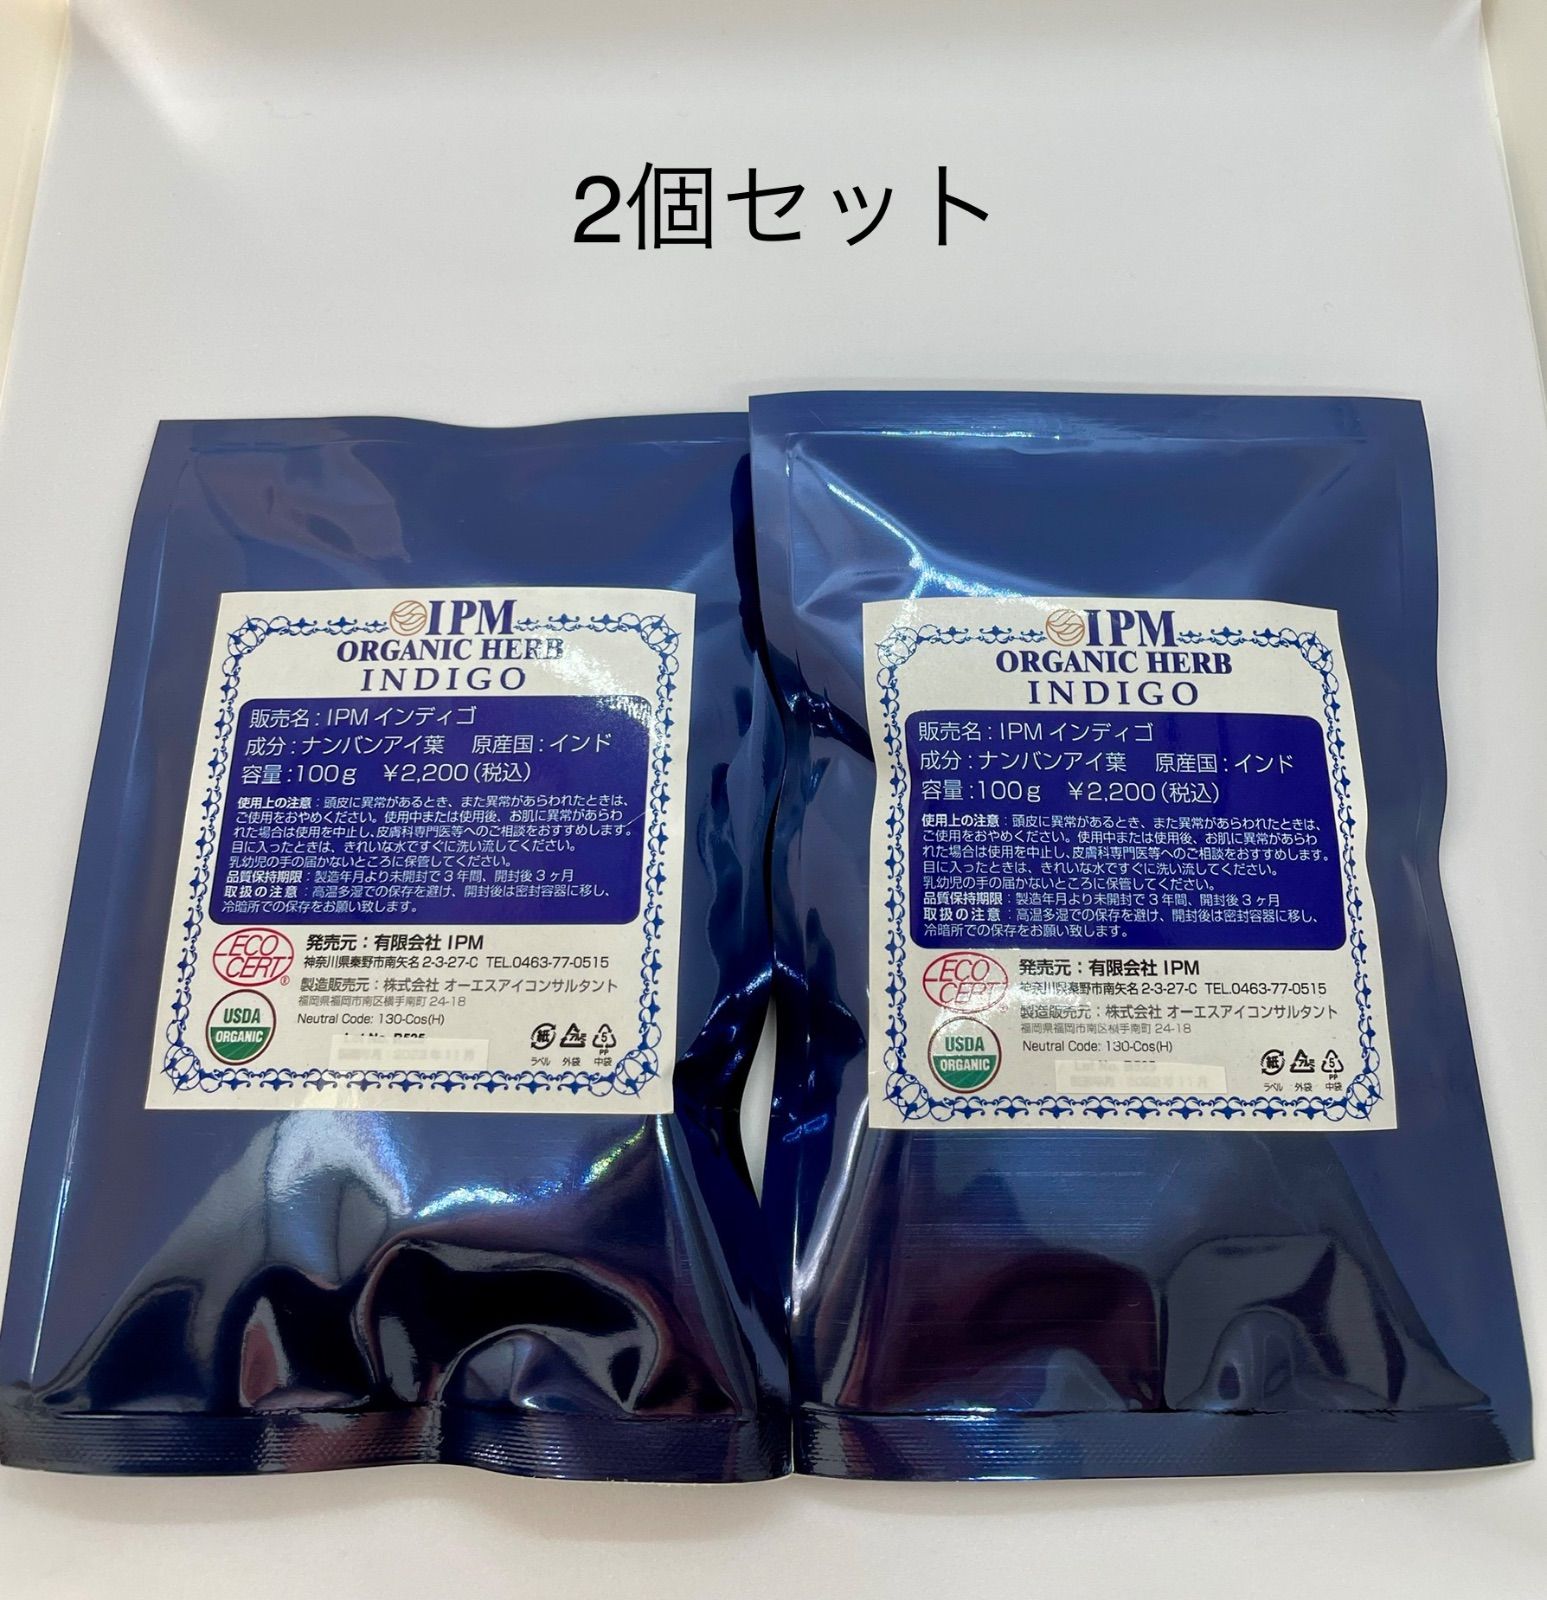 正規販売店】 IPM リーフインディゴ 2個セット 送料無料 - メルカリ